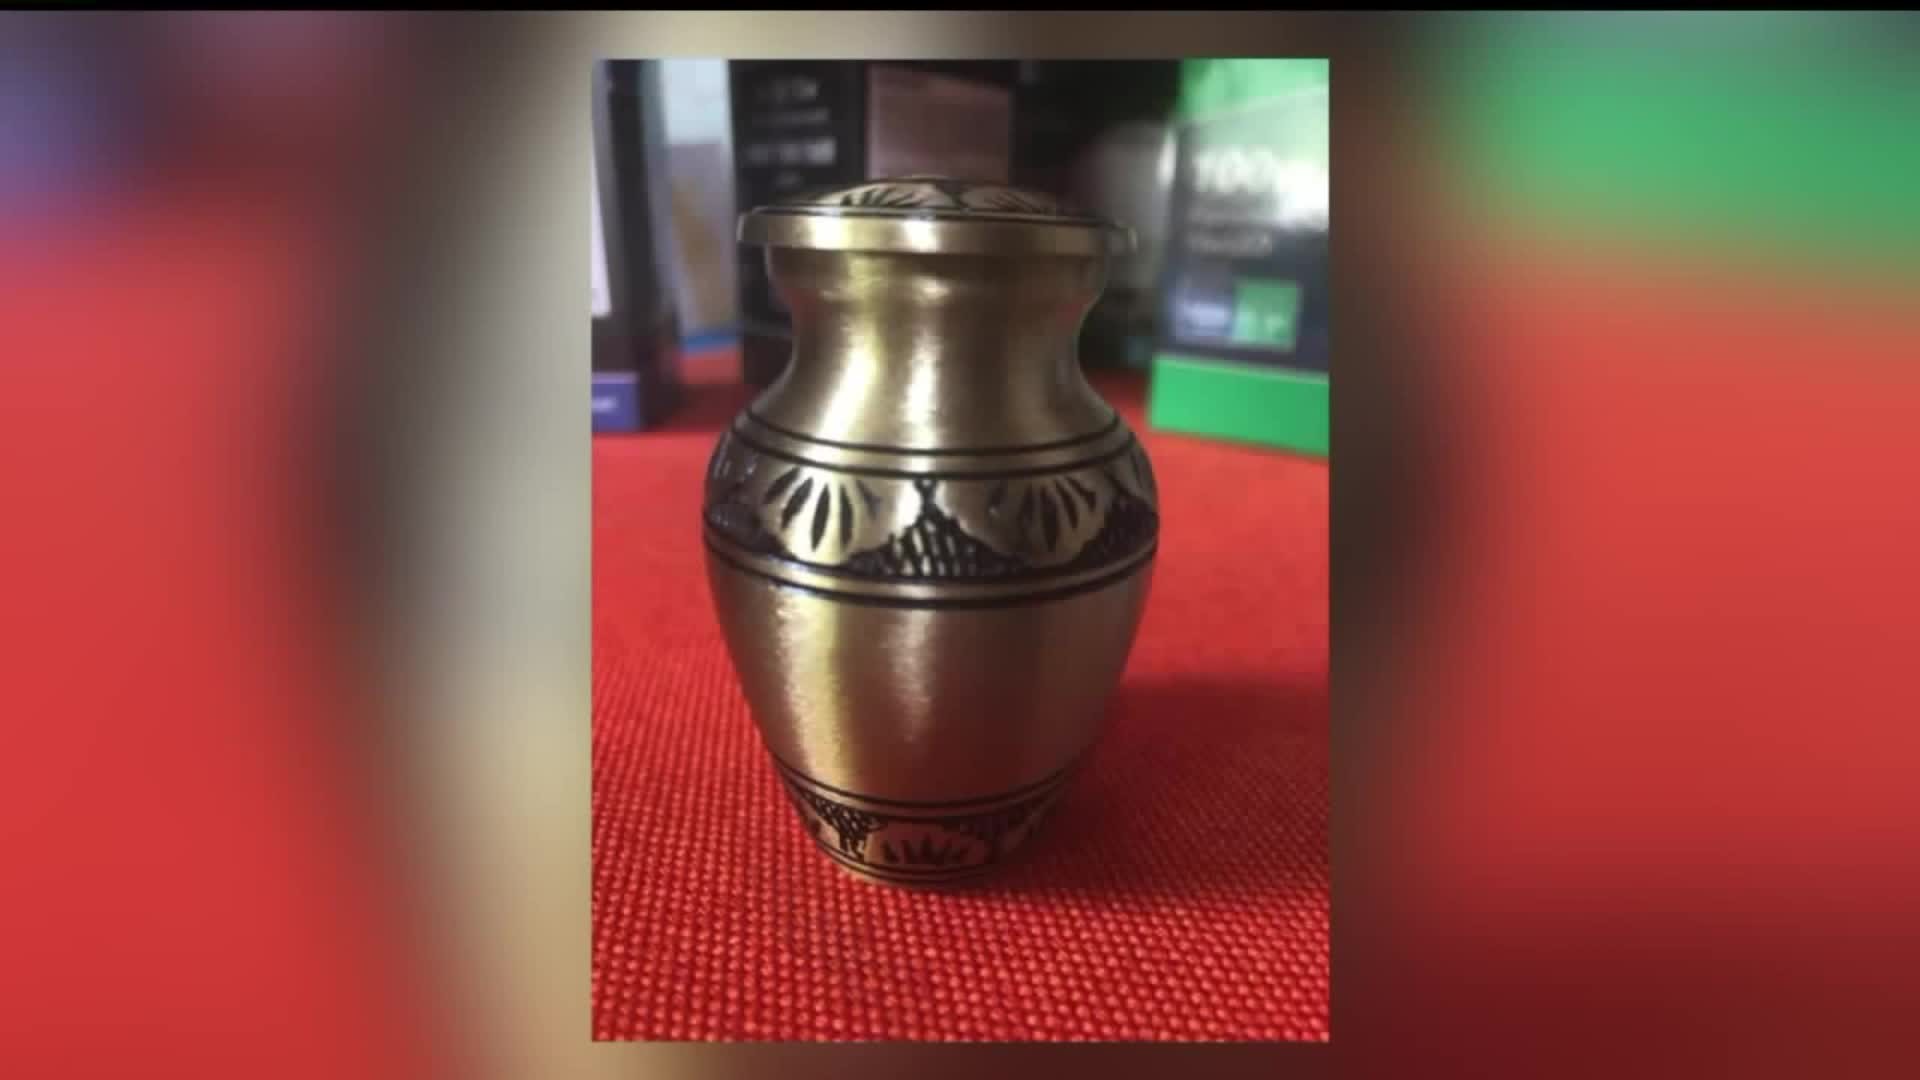 Family Pleads Stolen Urn be Returned